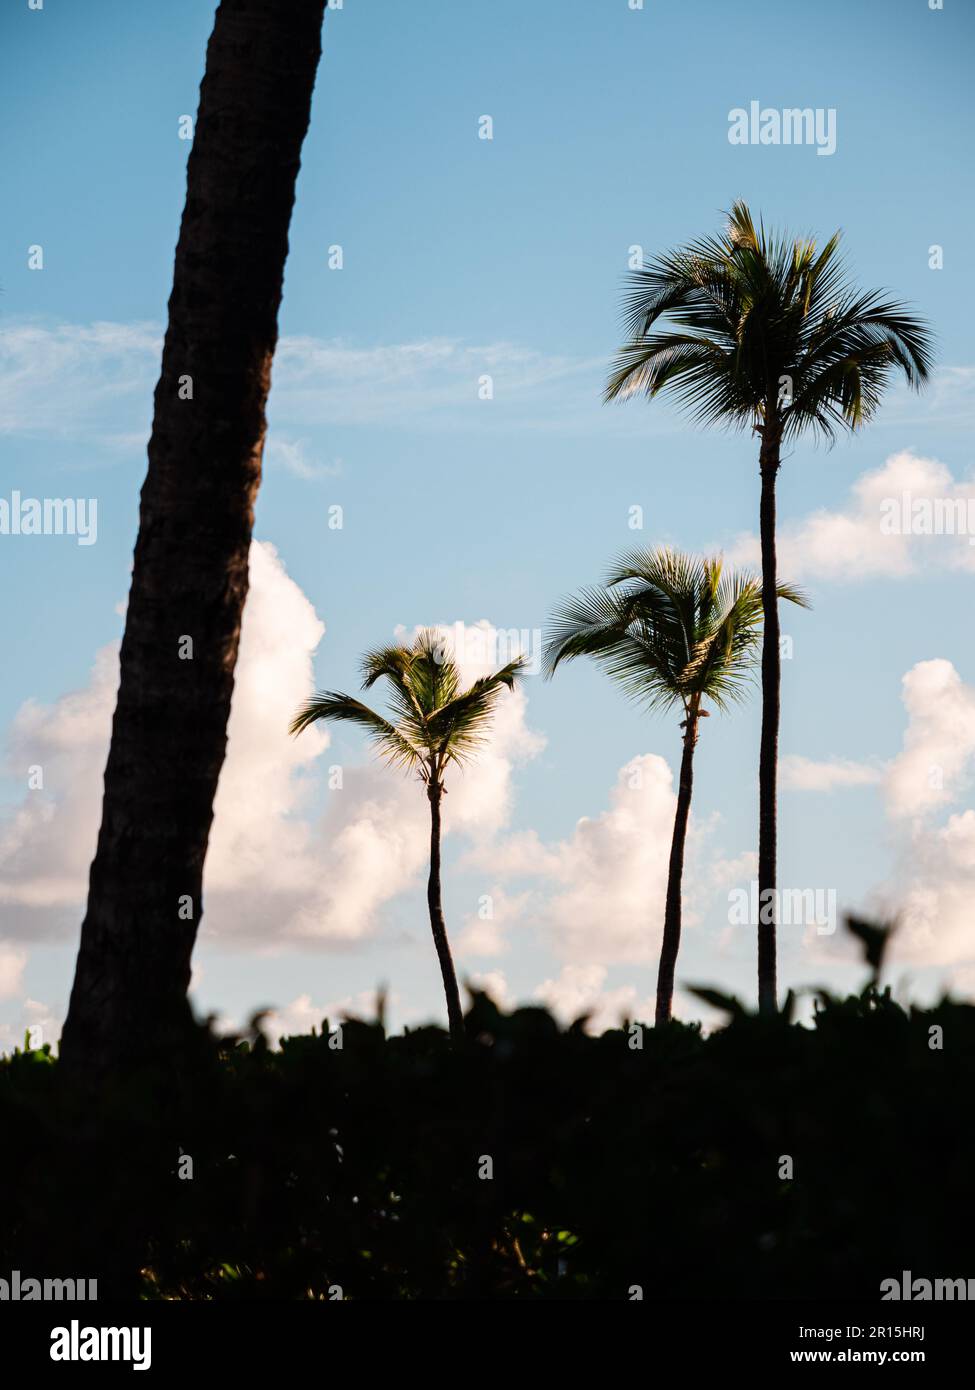 Palmiers à la lumière d'un lever de soleil matinal. Il y a des cieux bleus et des nuages blancs derrière le sommet des cocotiers dans cette scène tropicale. Banque D'Images